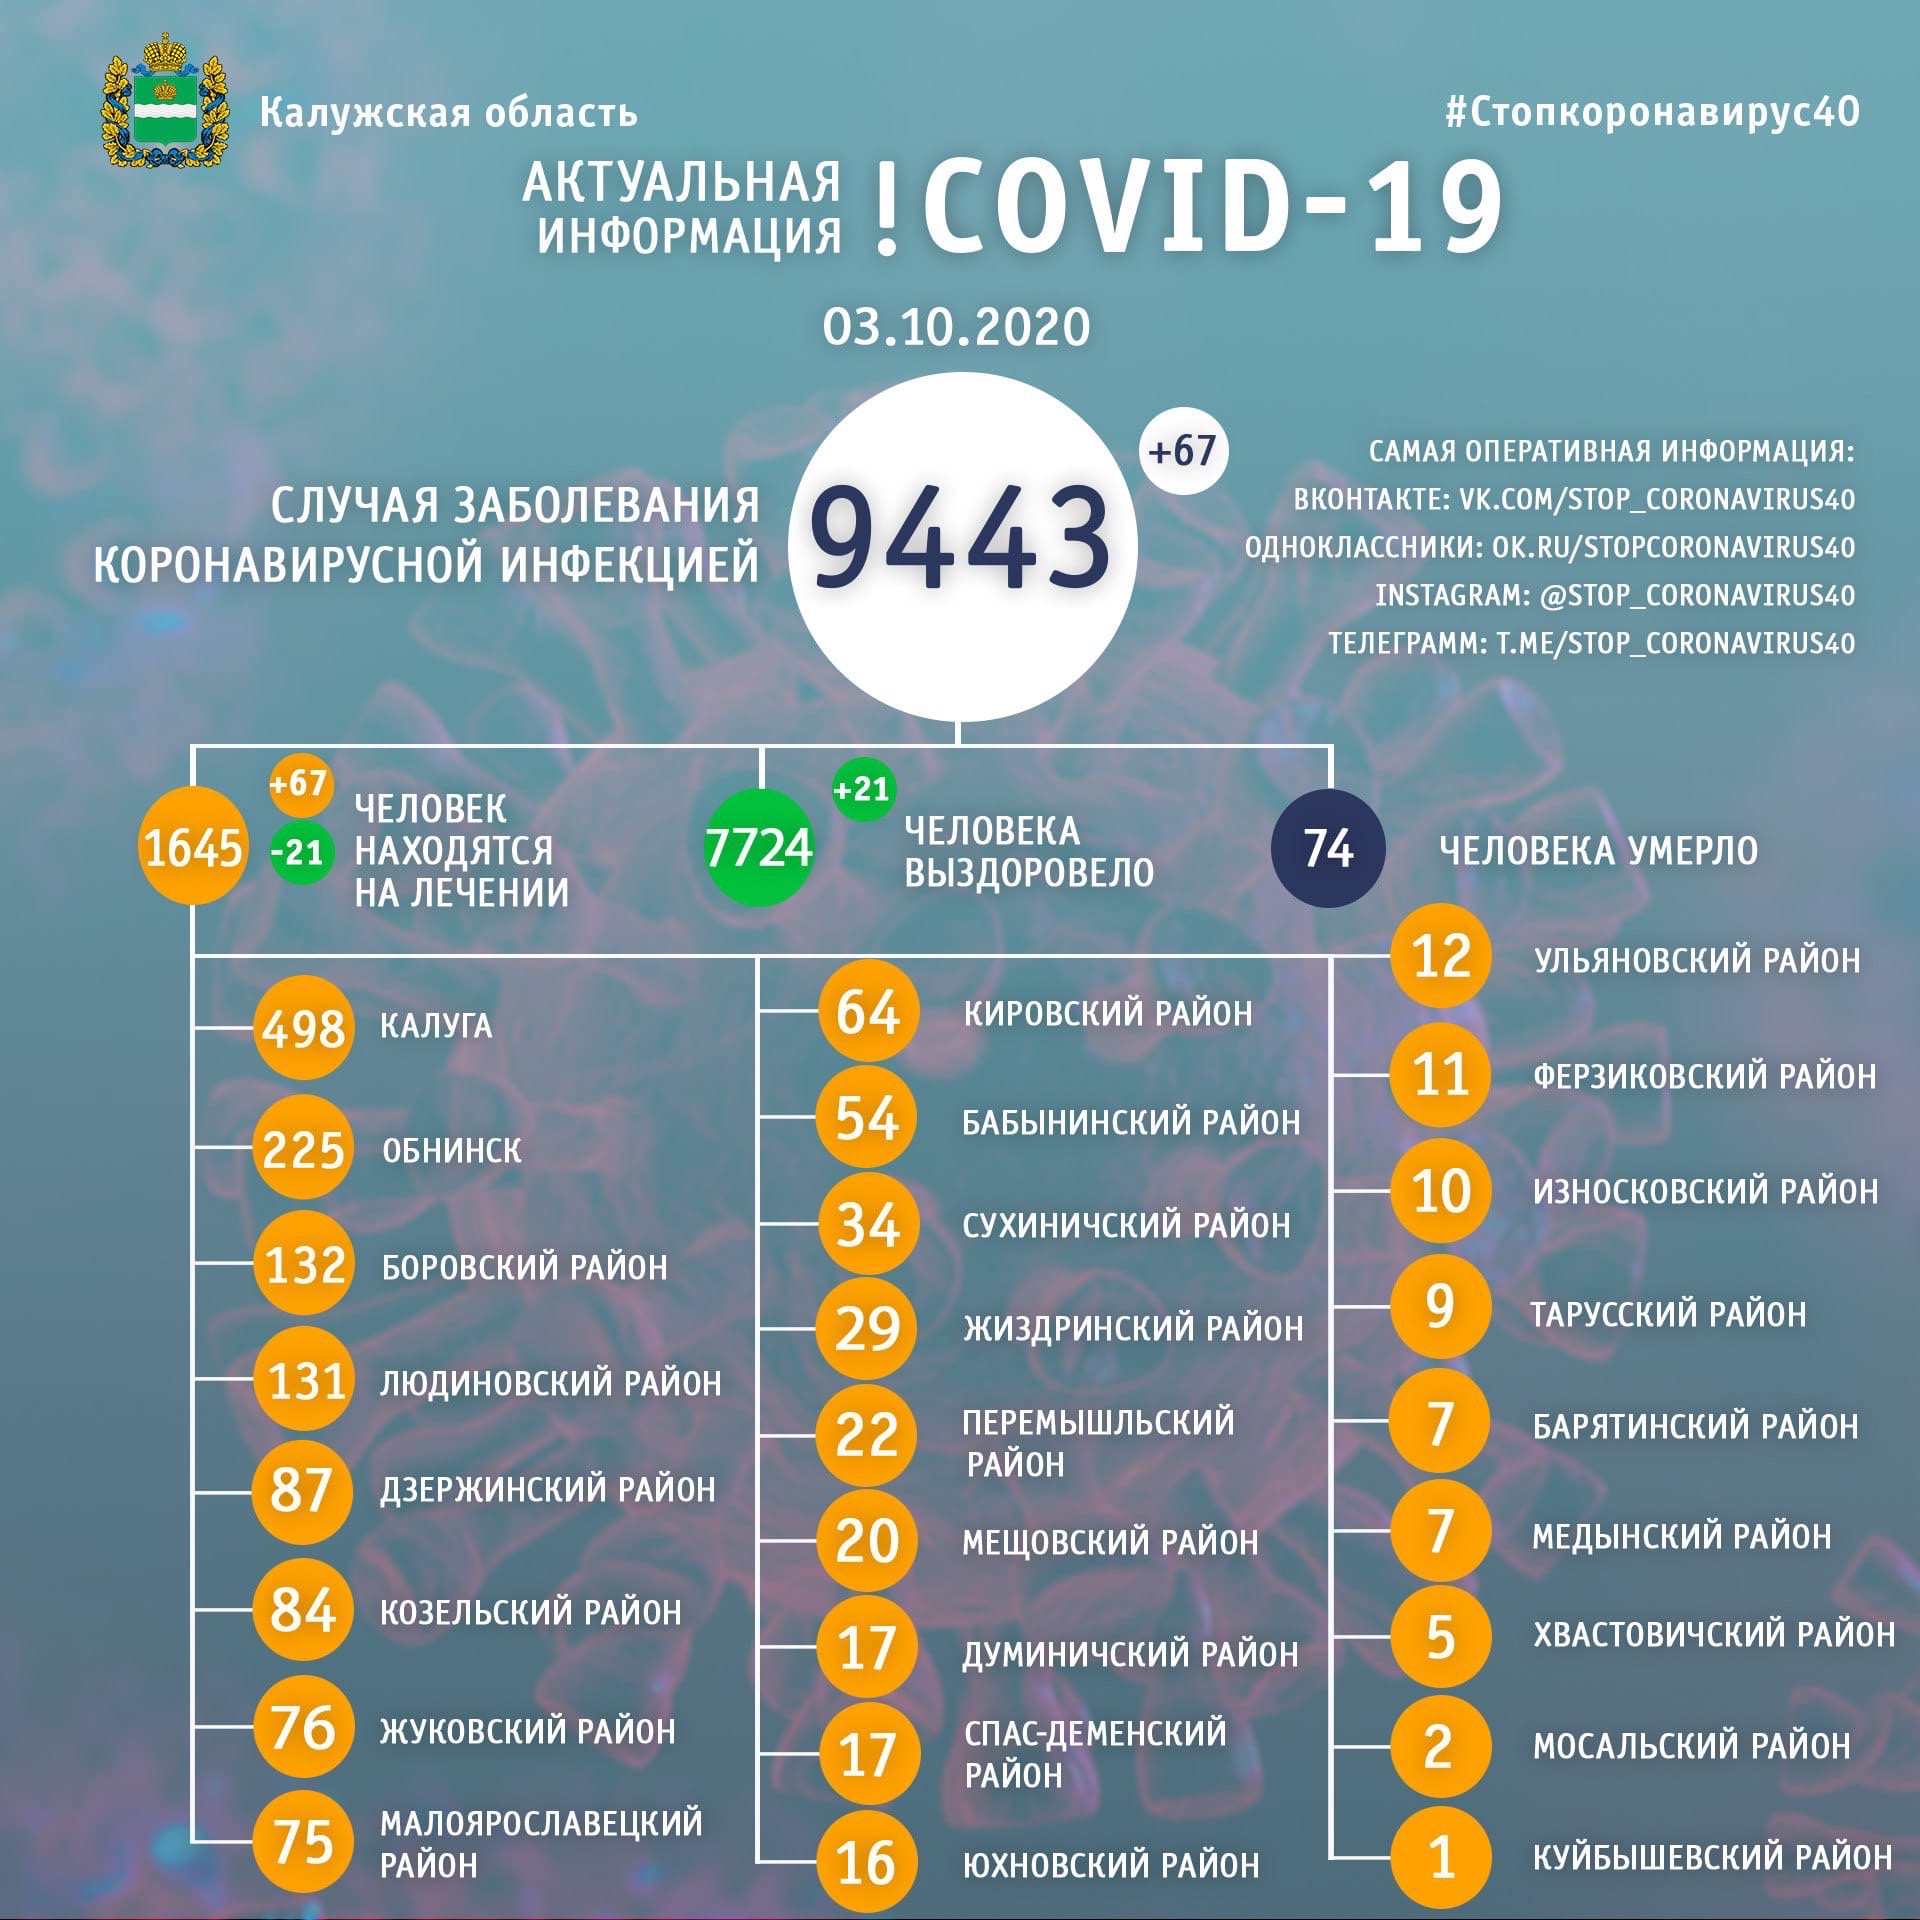 Официальная статистика по коронавирусу в Калужской области на 3 октября 2020 года.